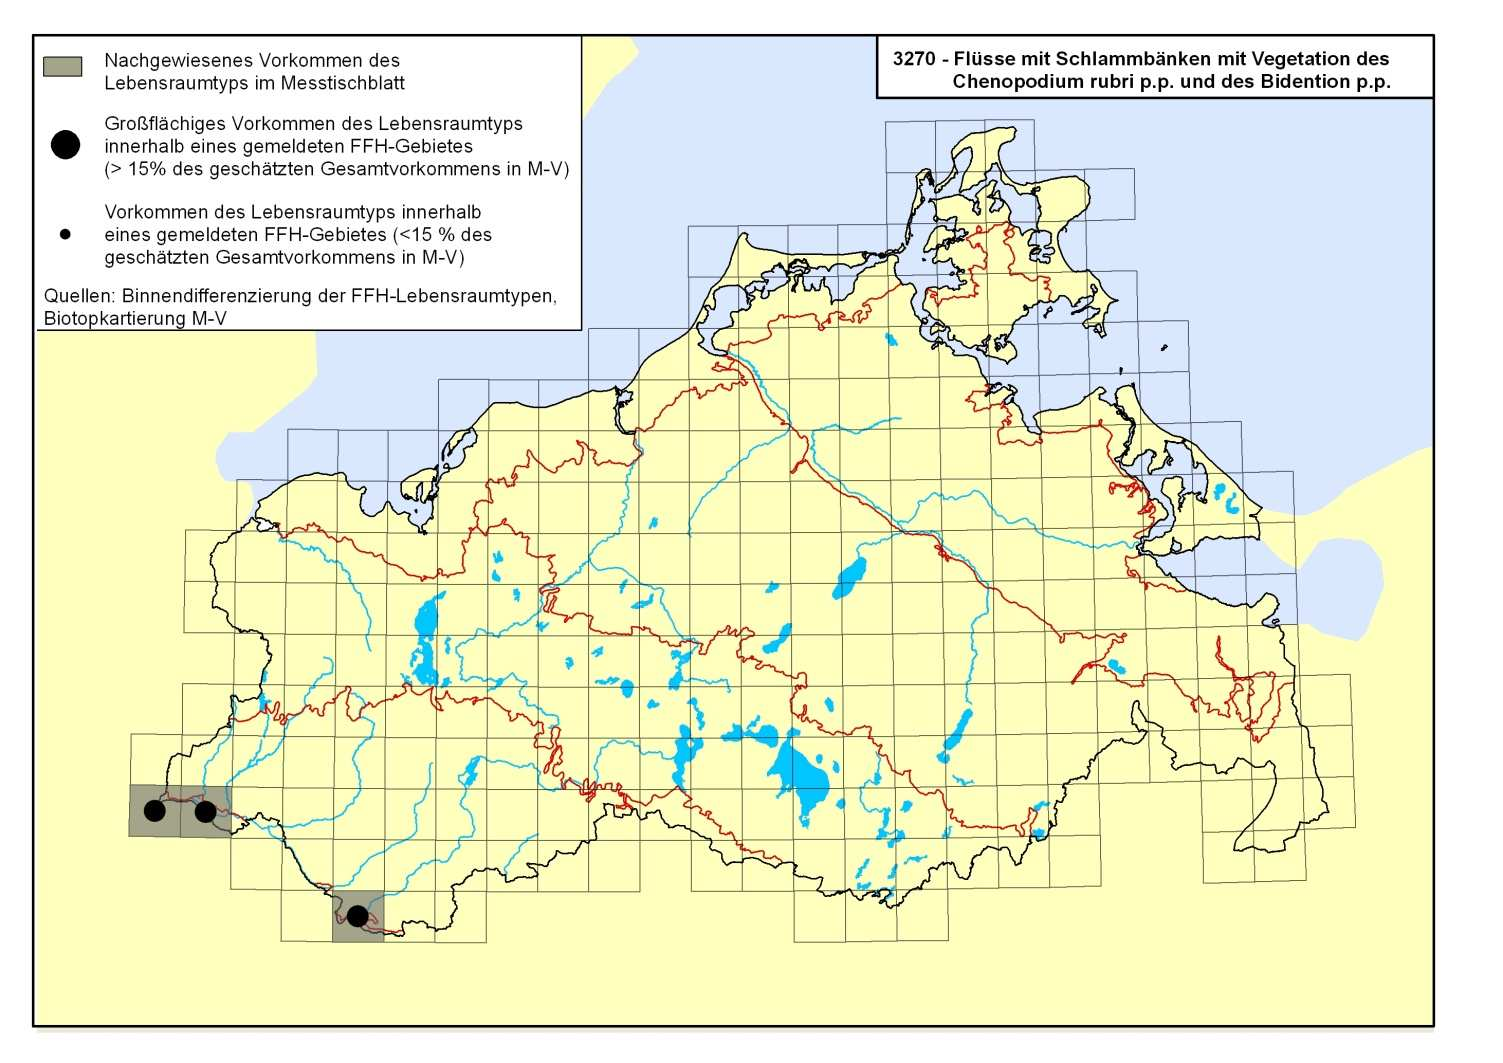 Abb. 1: Karte der aktuellen Verbreitung der Flüsse mit Schlammbänken 3270.